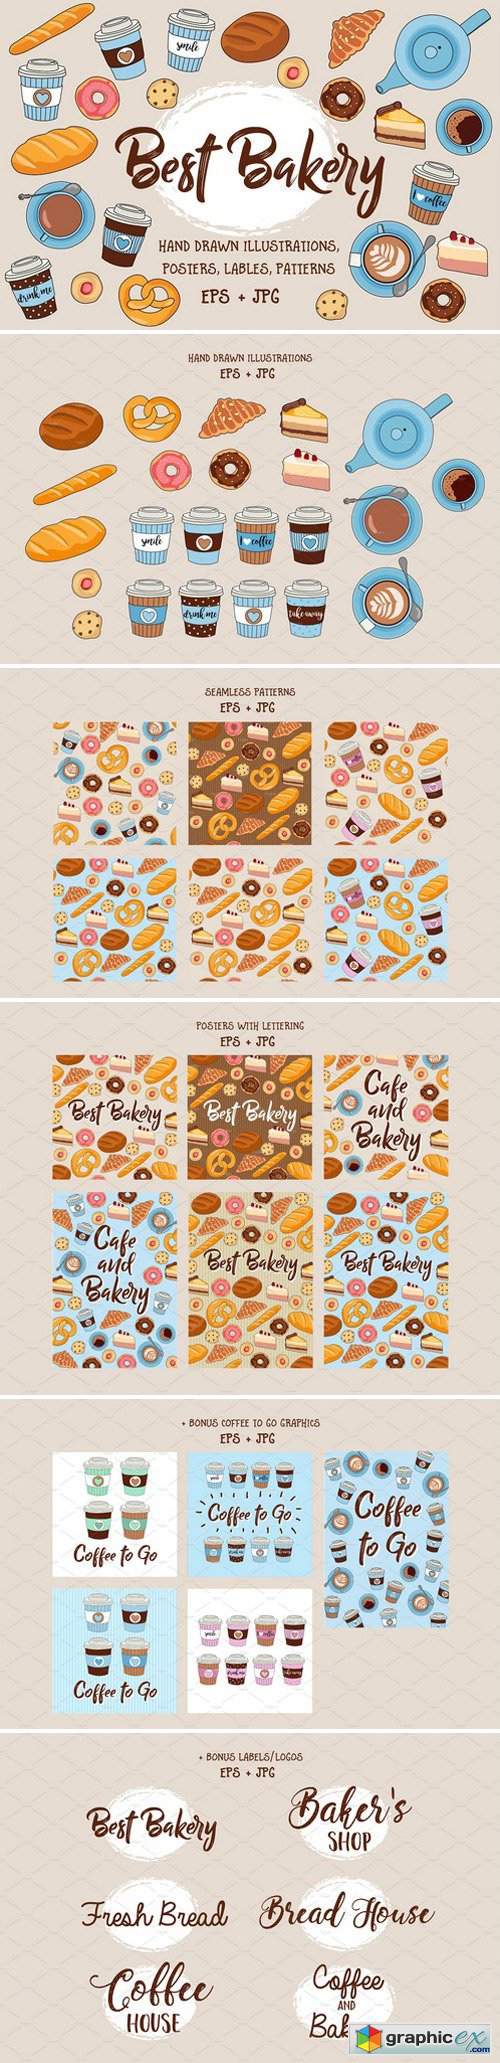 Best Bakery illustration pack +bonus